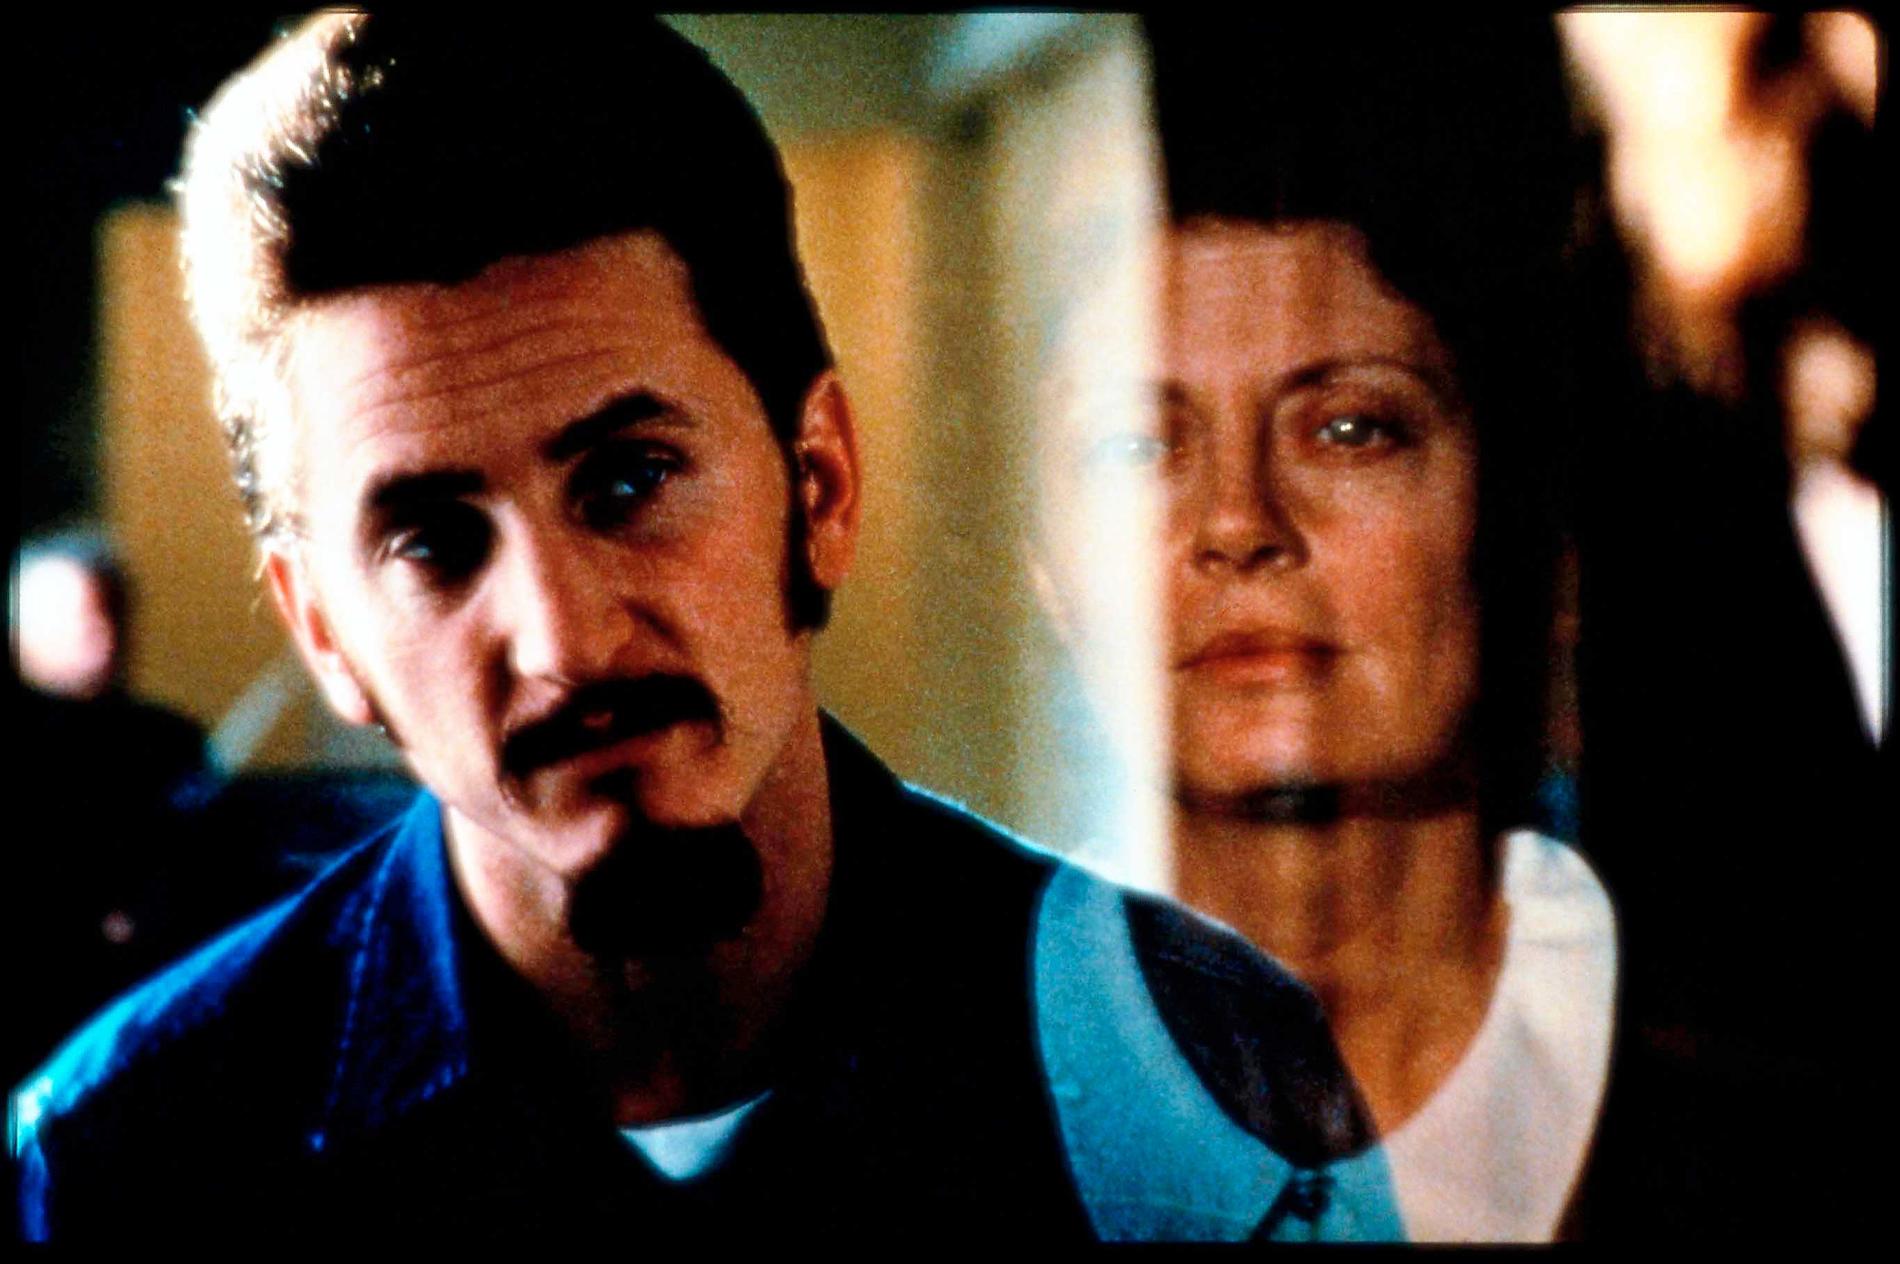 Sean Penn & Susan Sarandon i Tim Robbins film ”Dead man walking”.